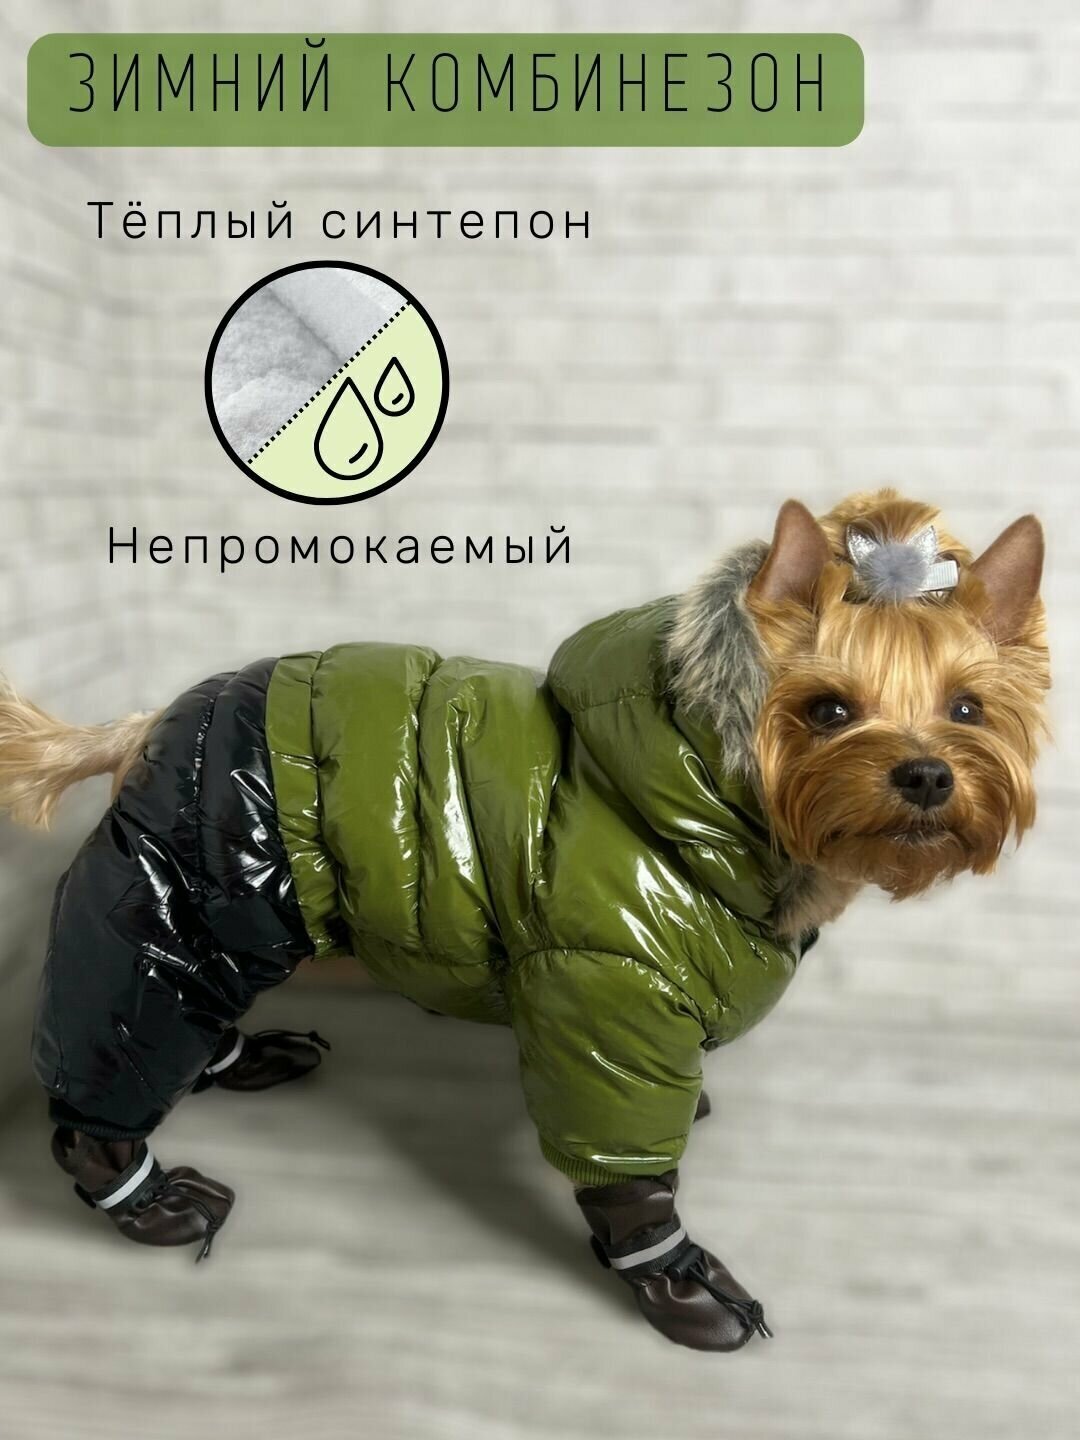 Зимний комбинезон для собак / Непромокаемый / Плотный синтепон / Размер 12 / Хаки